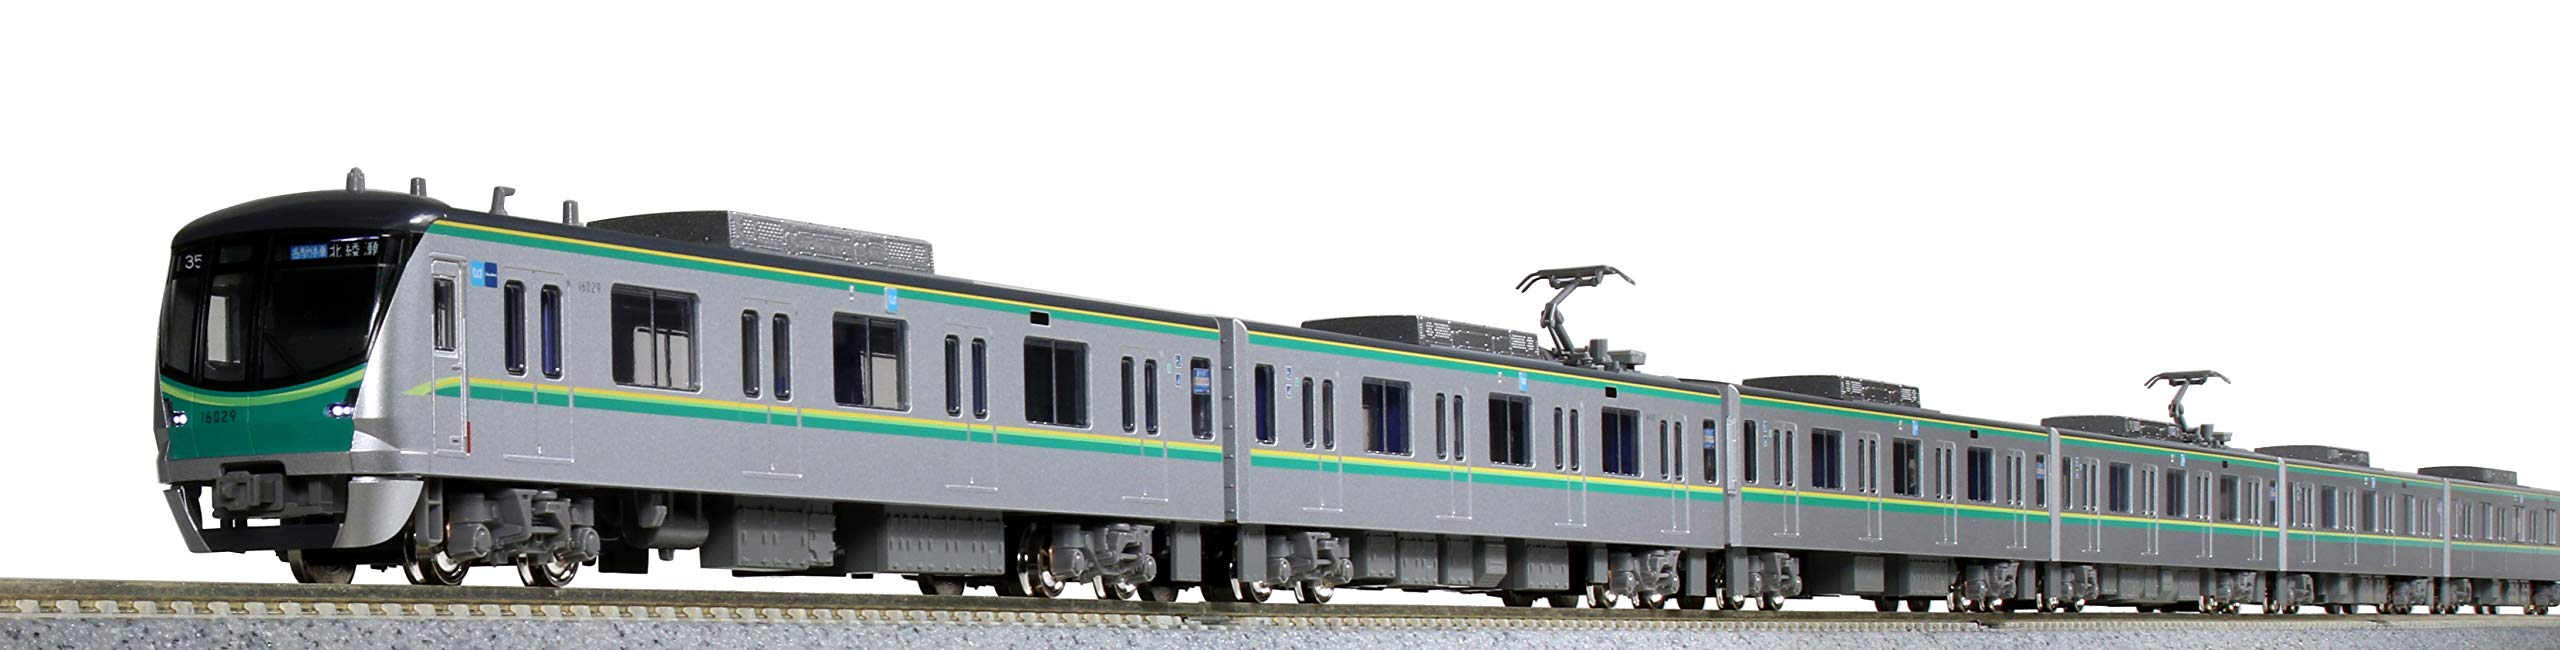 Kato N gauge 10-1605 Tokyo Metro Chiyoda Line Series 16000(5th) 6-Car Basic Set_5